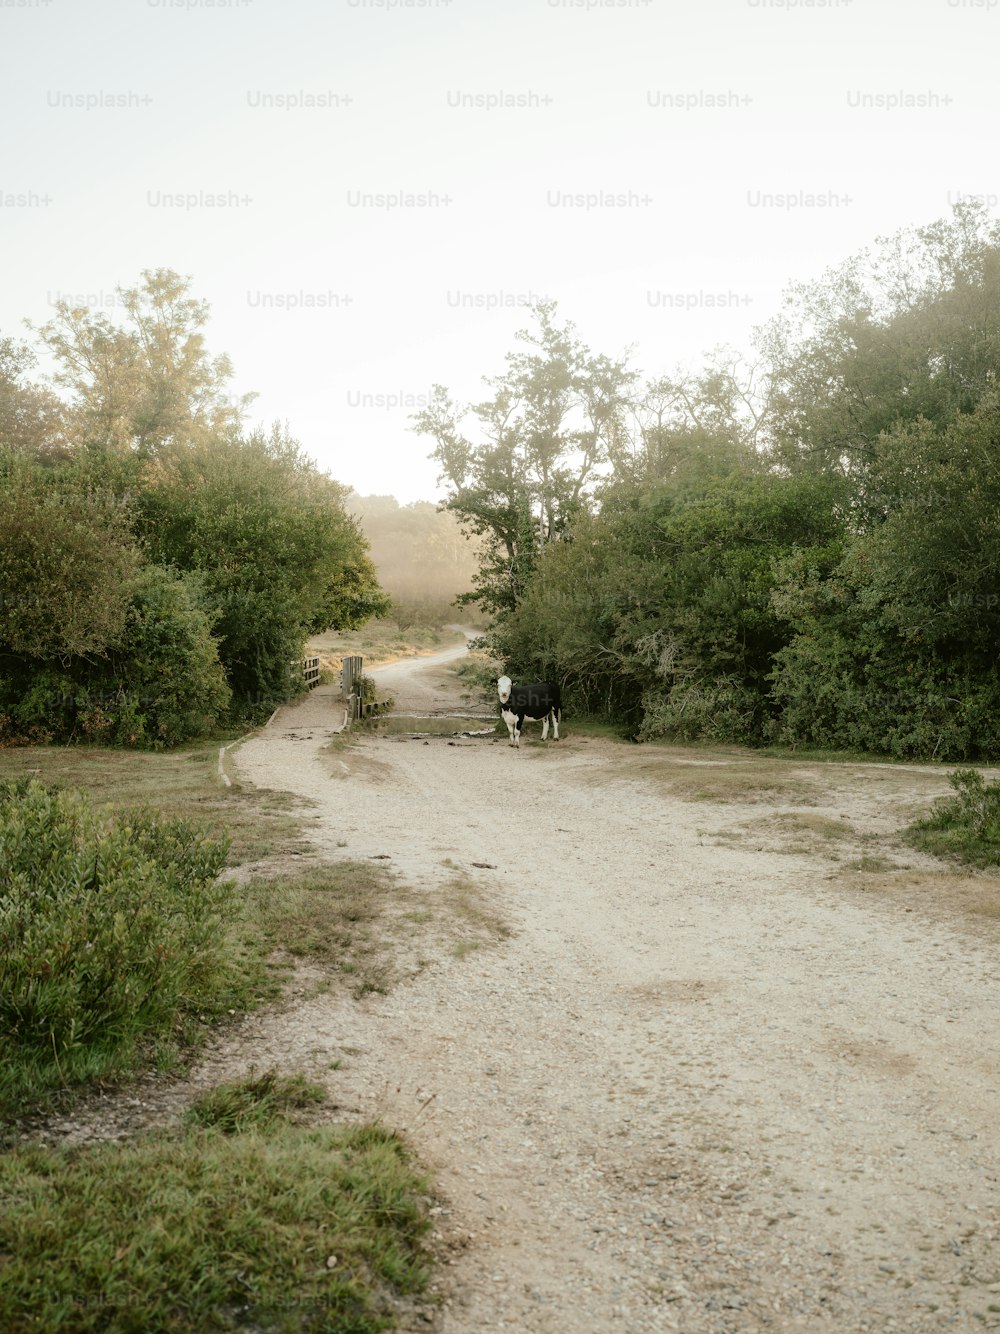 Un par de vacas caminando por un camino de tierra